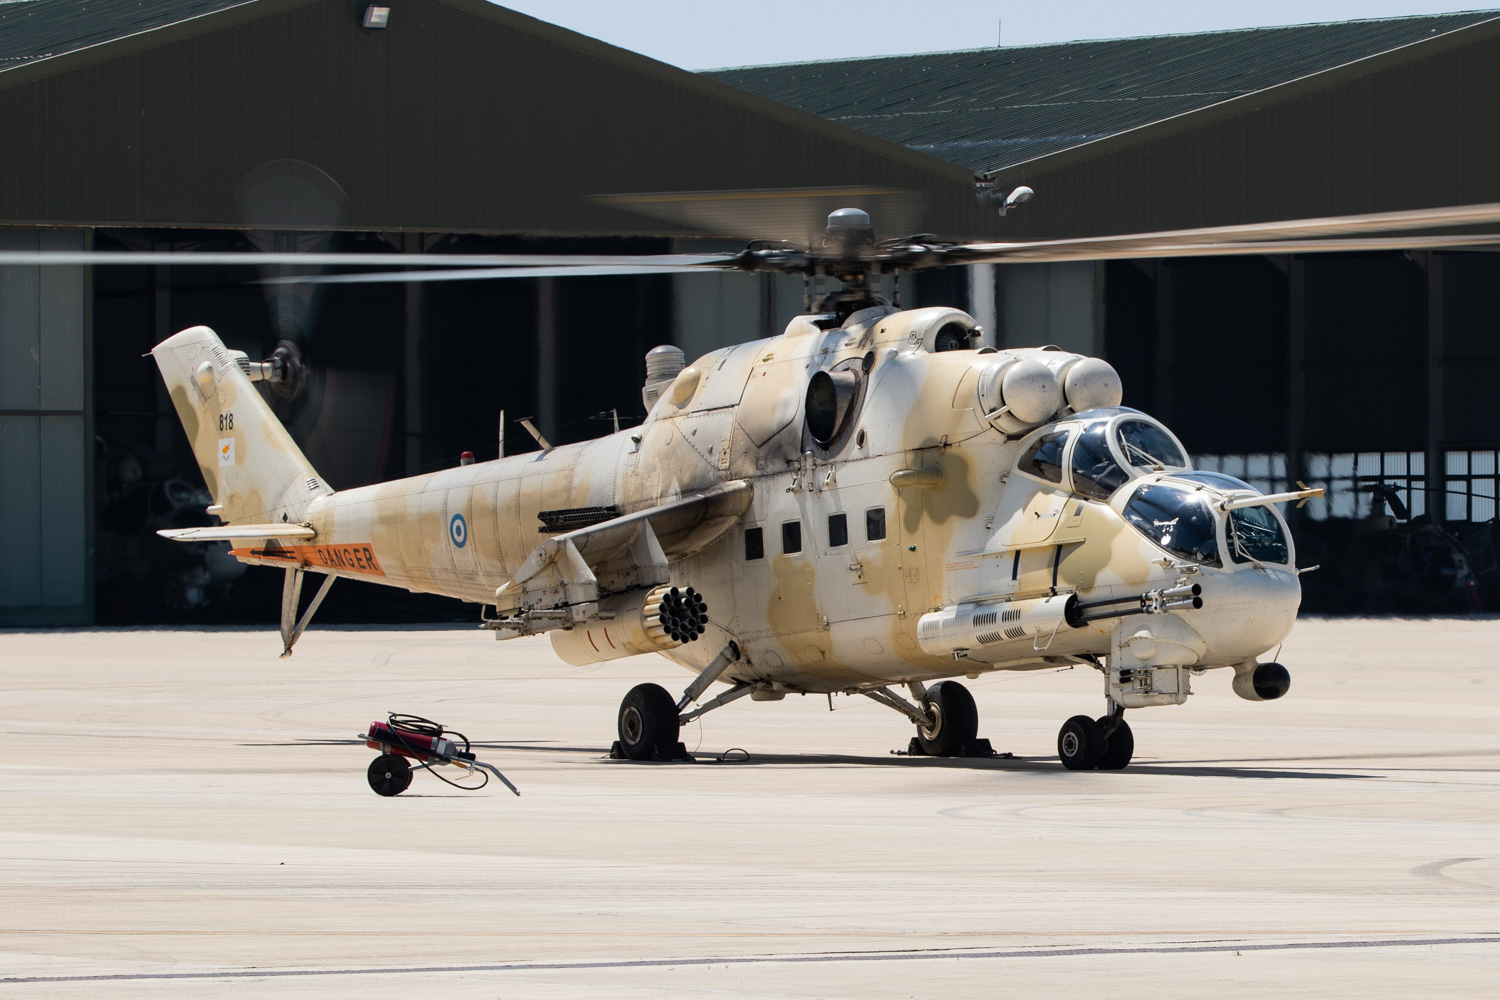 Χωρίς επιθετικά ελικόπτερα έμεινε η ΕΦ: Η Σερβία παρουσίασε τα 11 Mil Mi-35 που αγόρασε από την Κύπρο (upd)